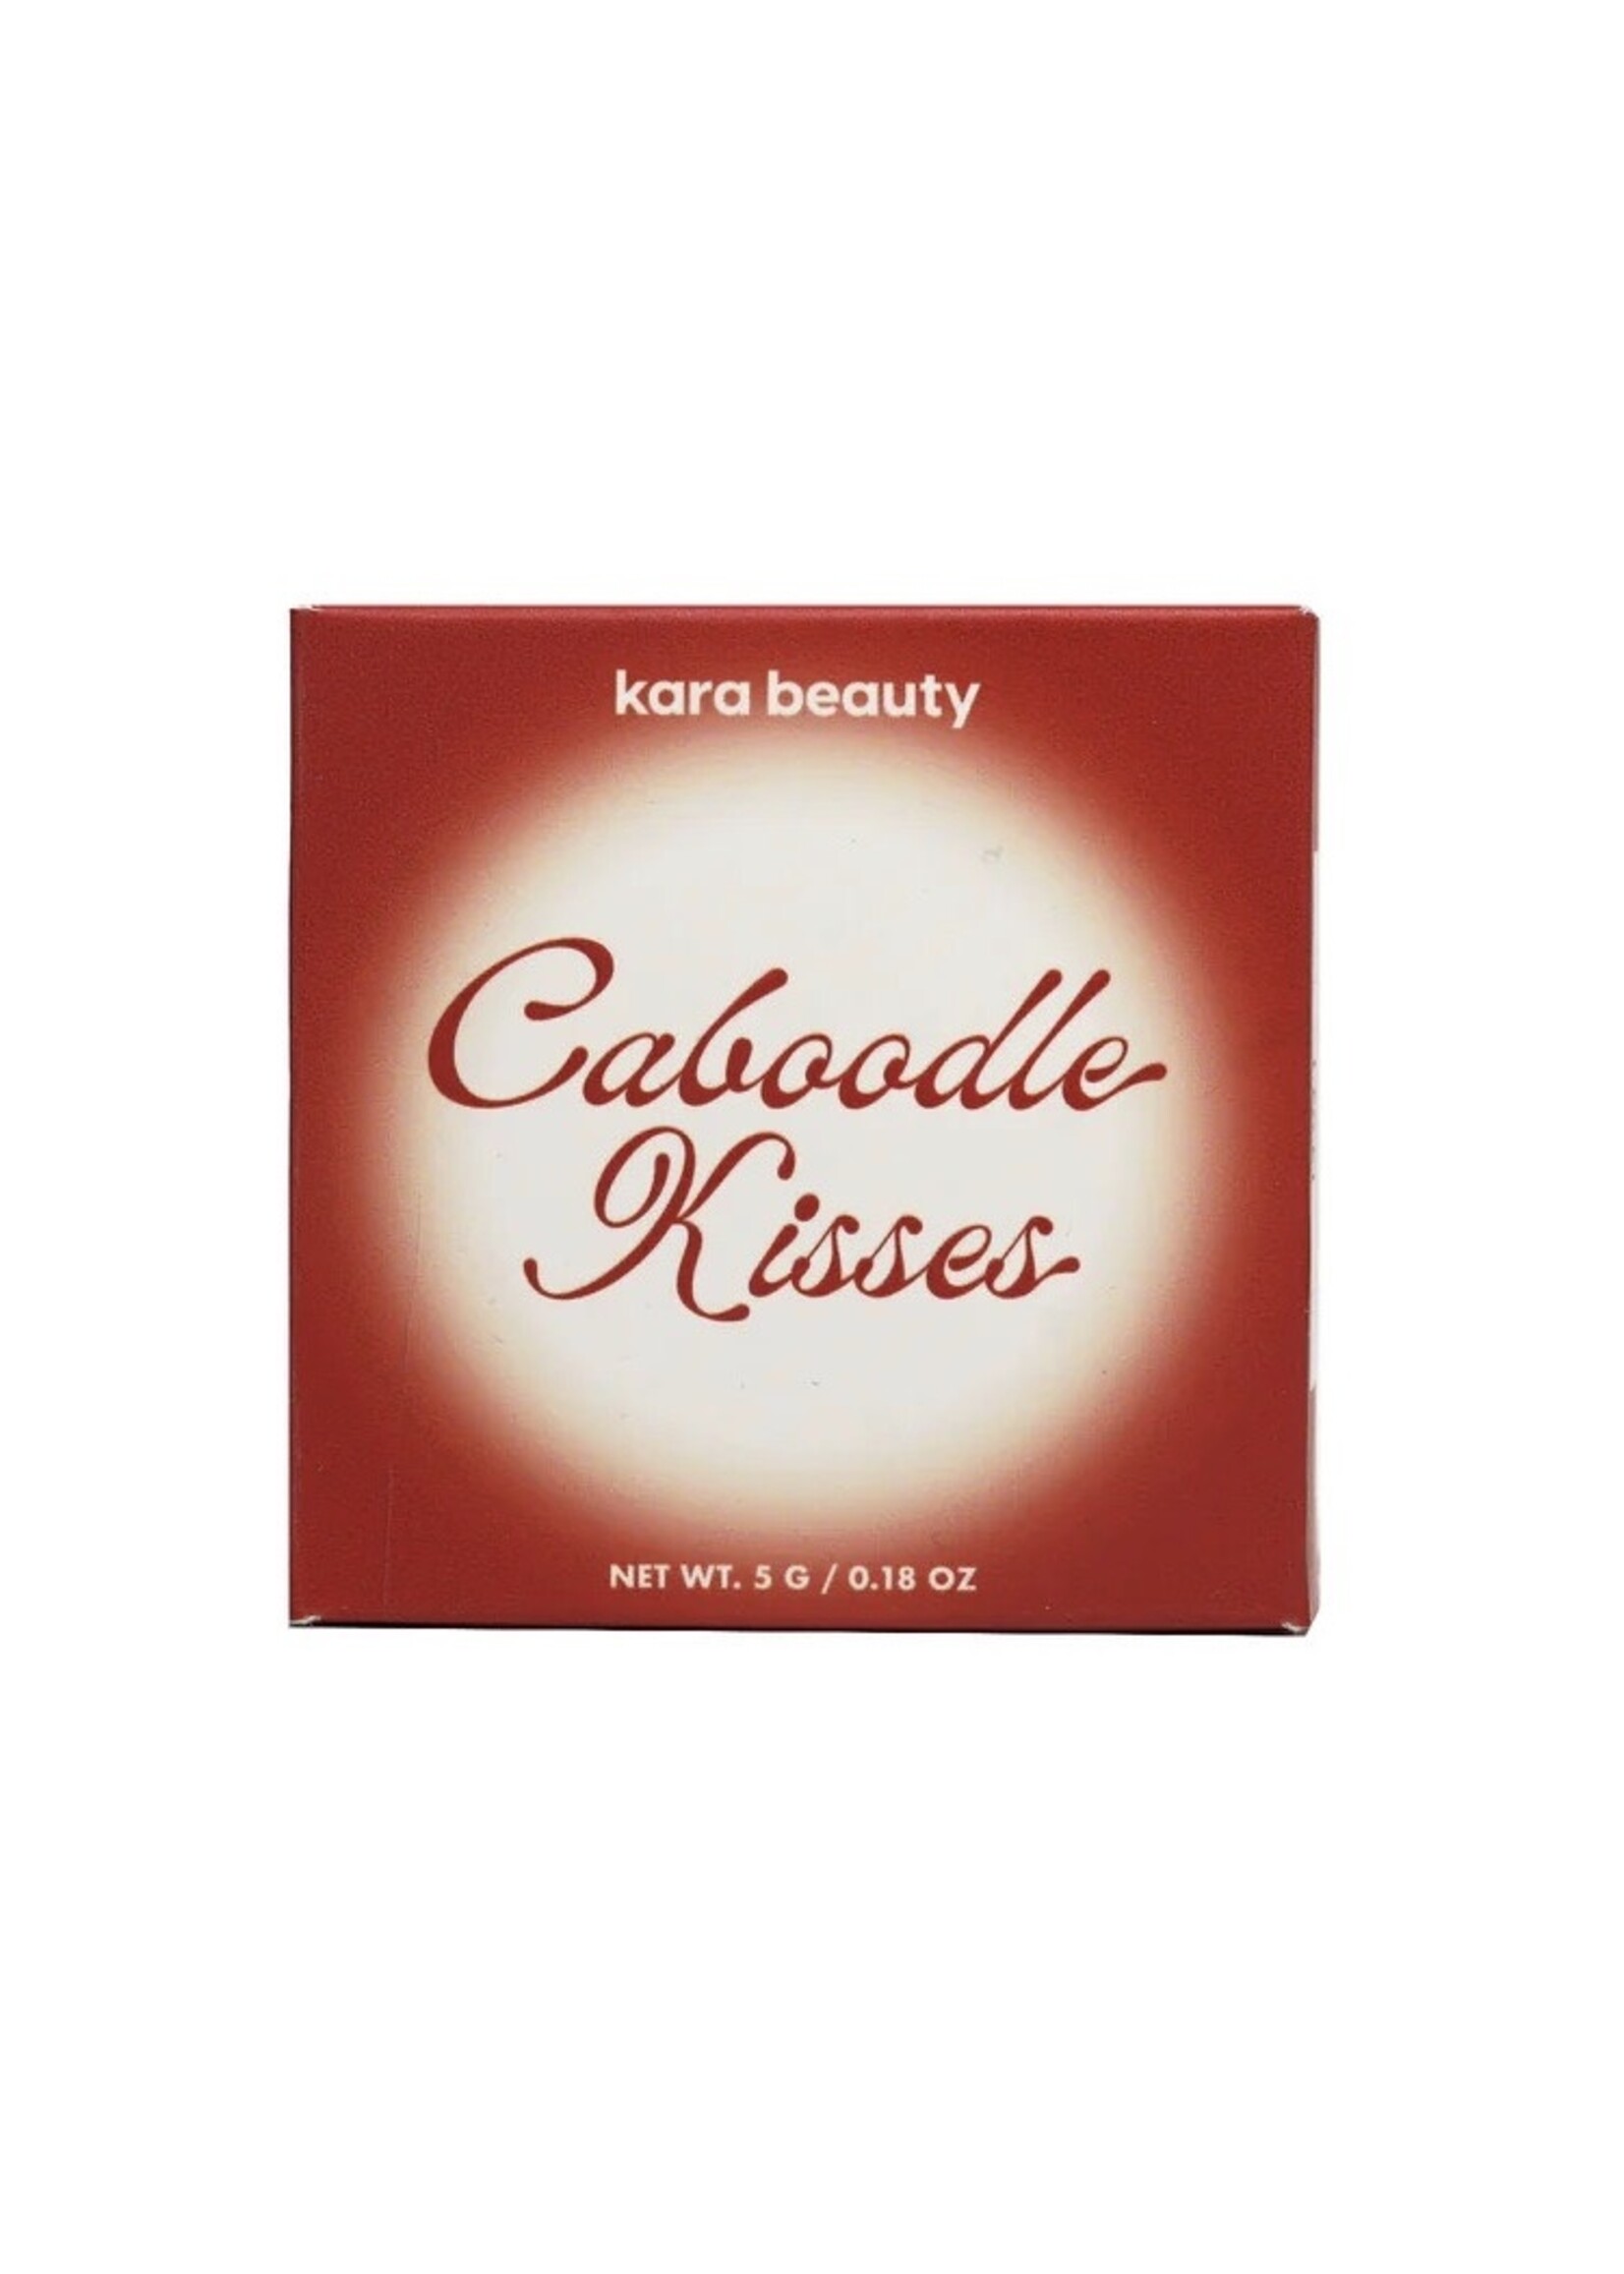 Kara Beauty Poudre et brillant à lèvres "Caboodle Kisses" par Kara Beauty